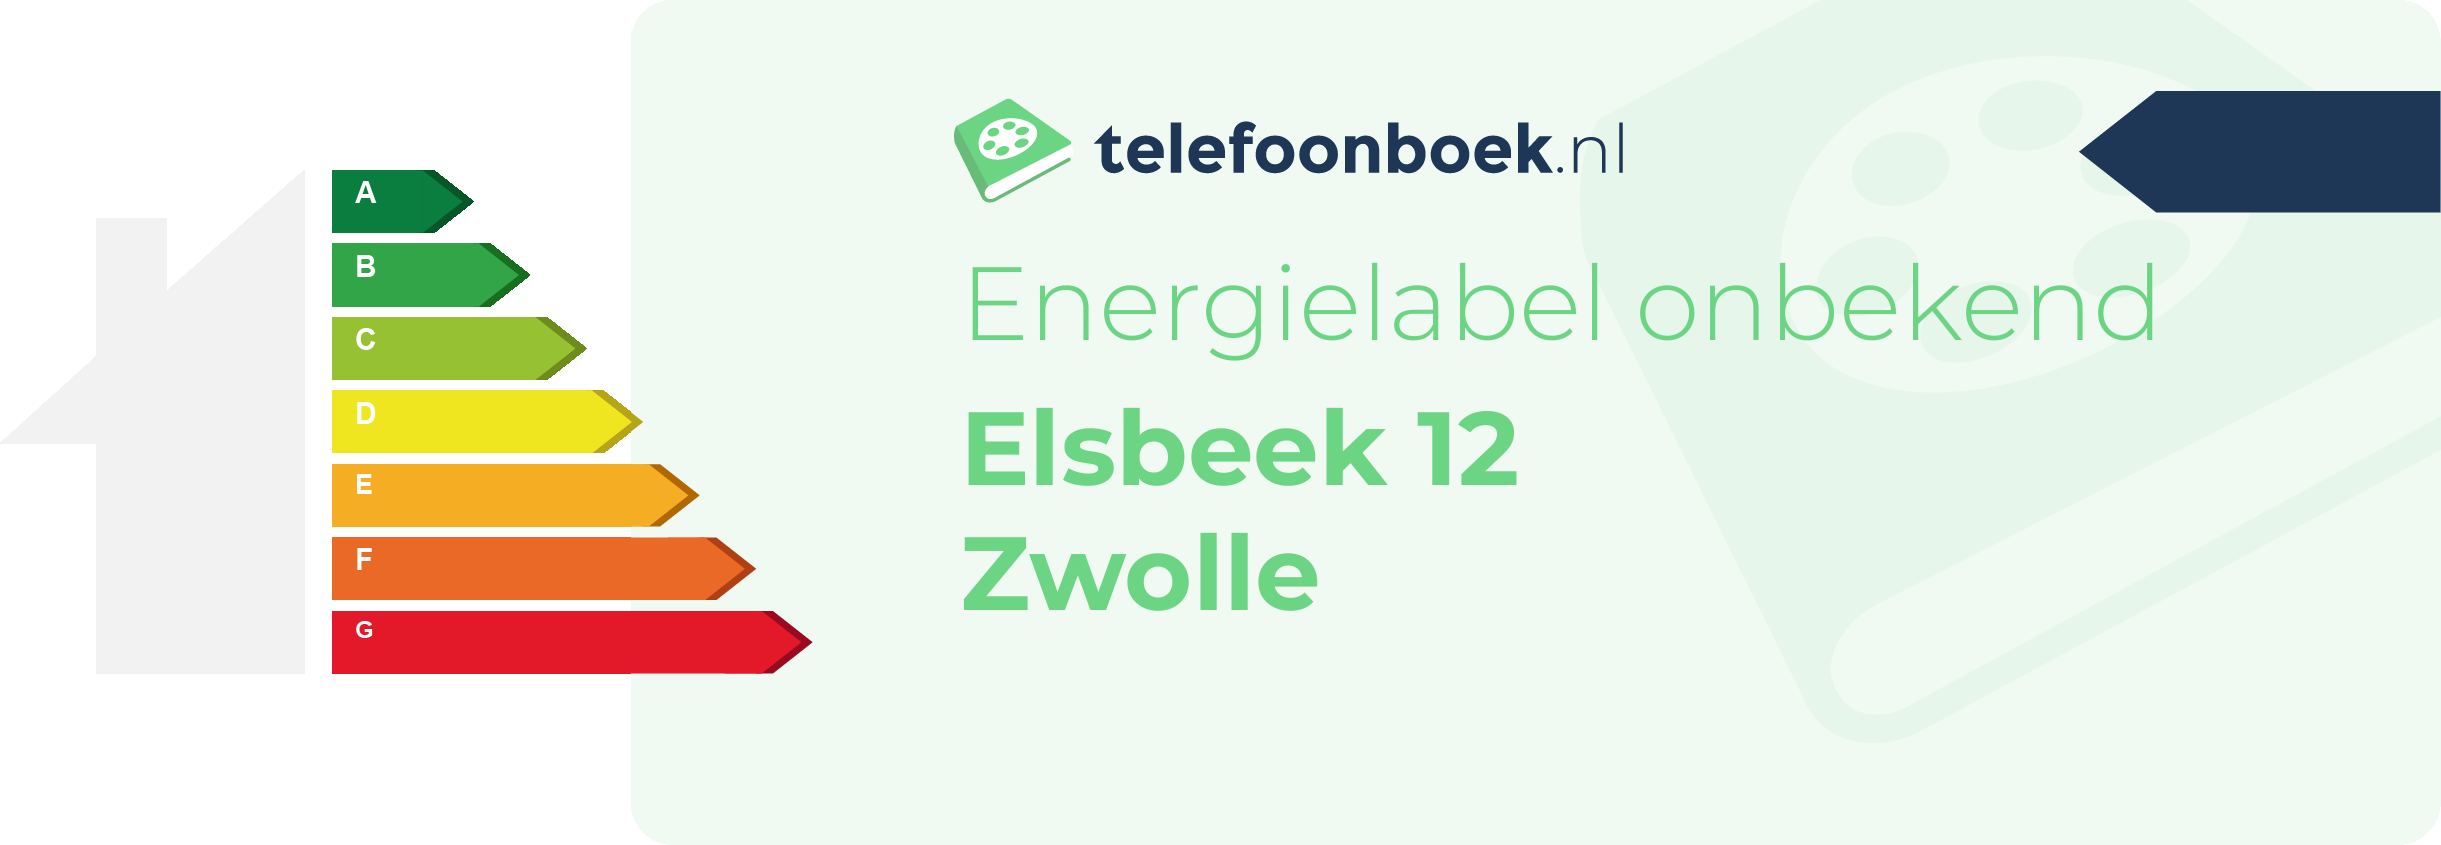 Energielabel Elsbeek 12 Zwolle